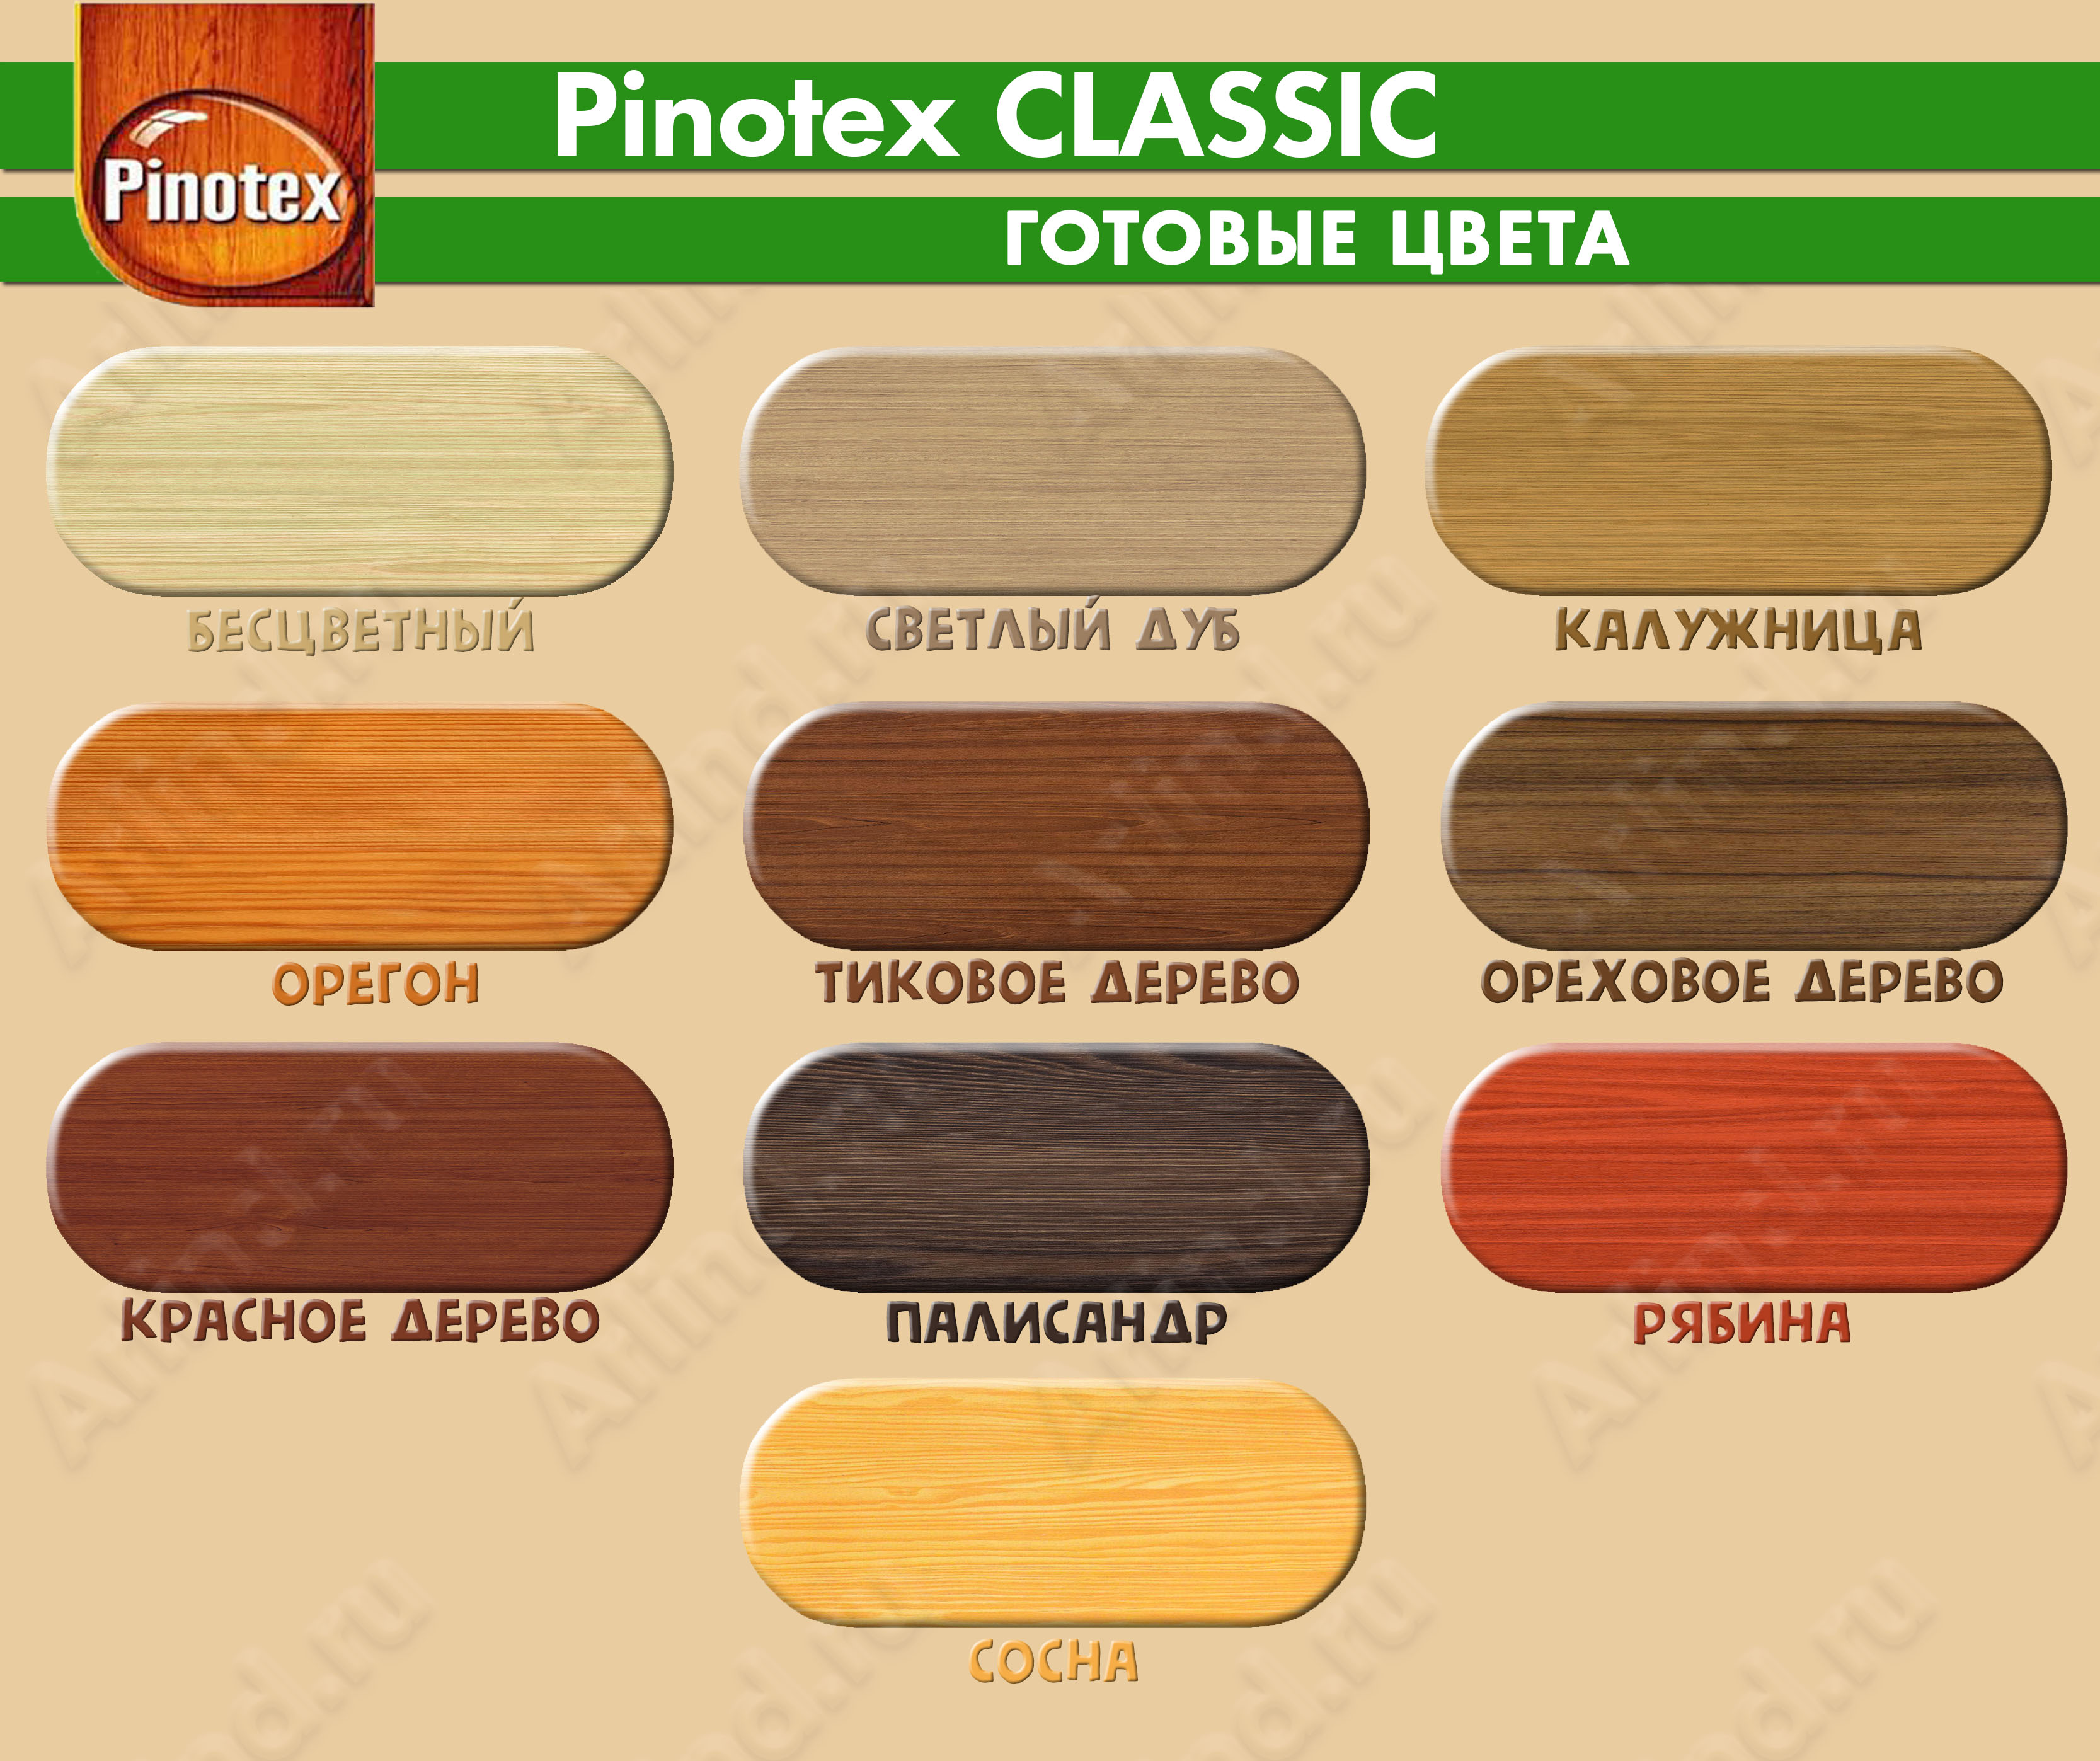 Цветовая гамма, цвета антисептика Pinotex Classic